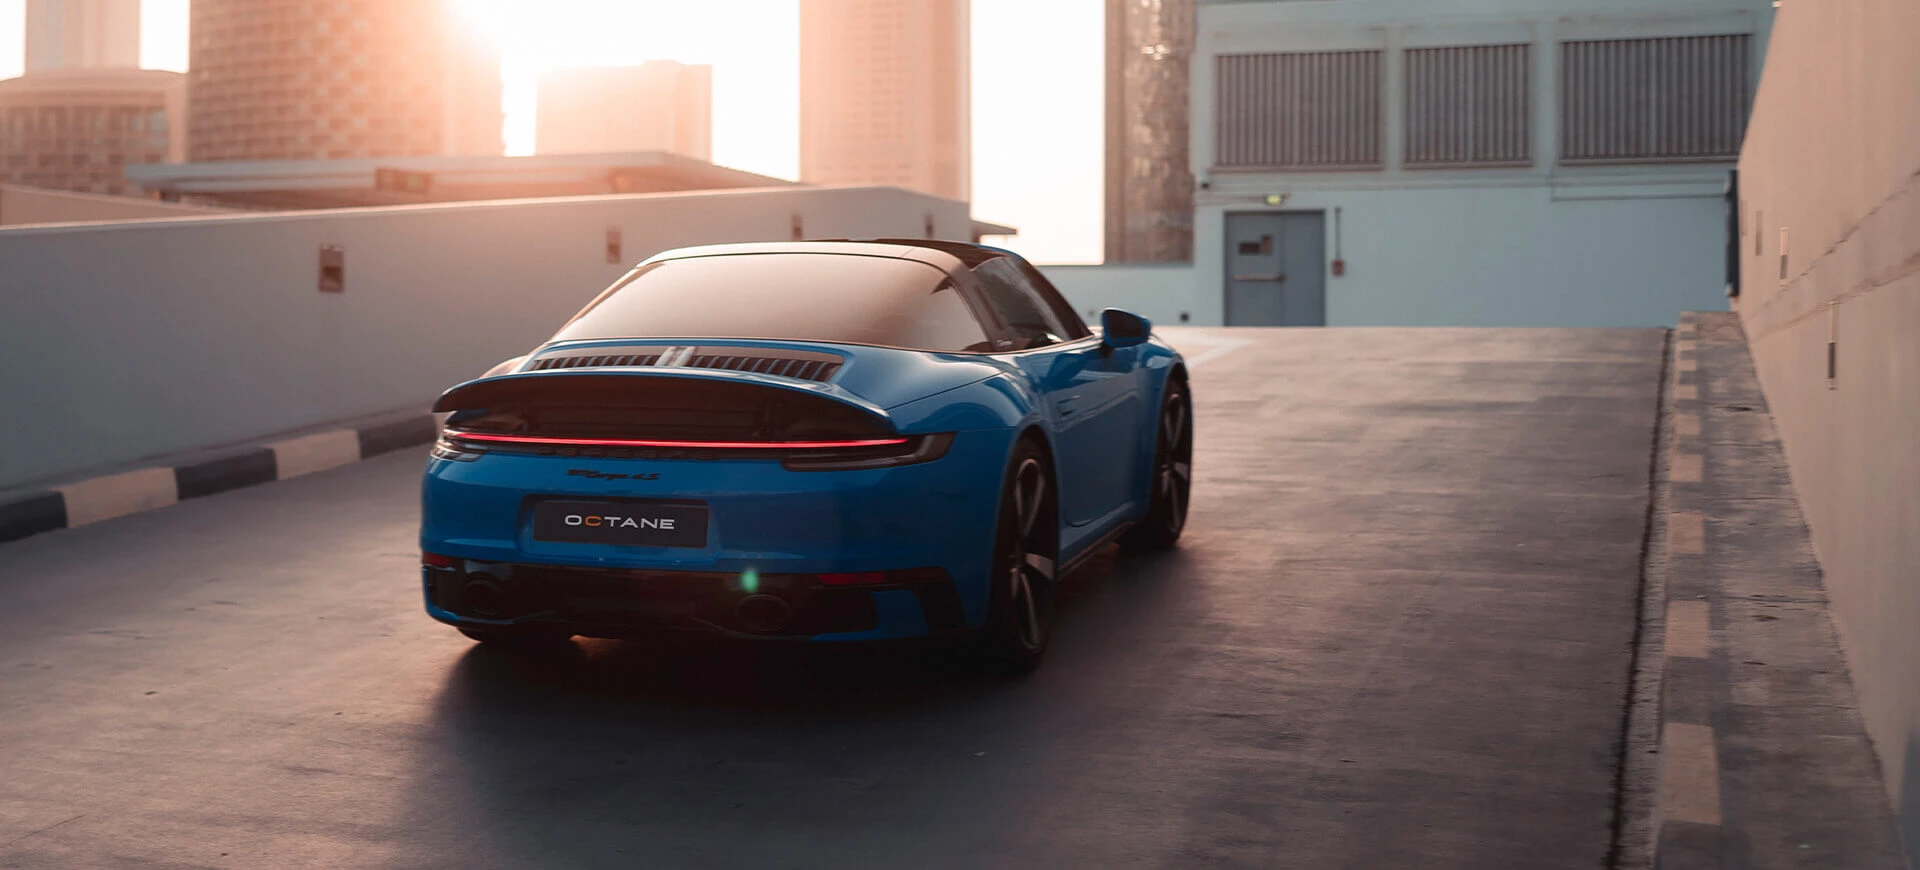 Alquilar un Porsche en Dubai